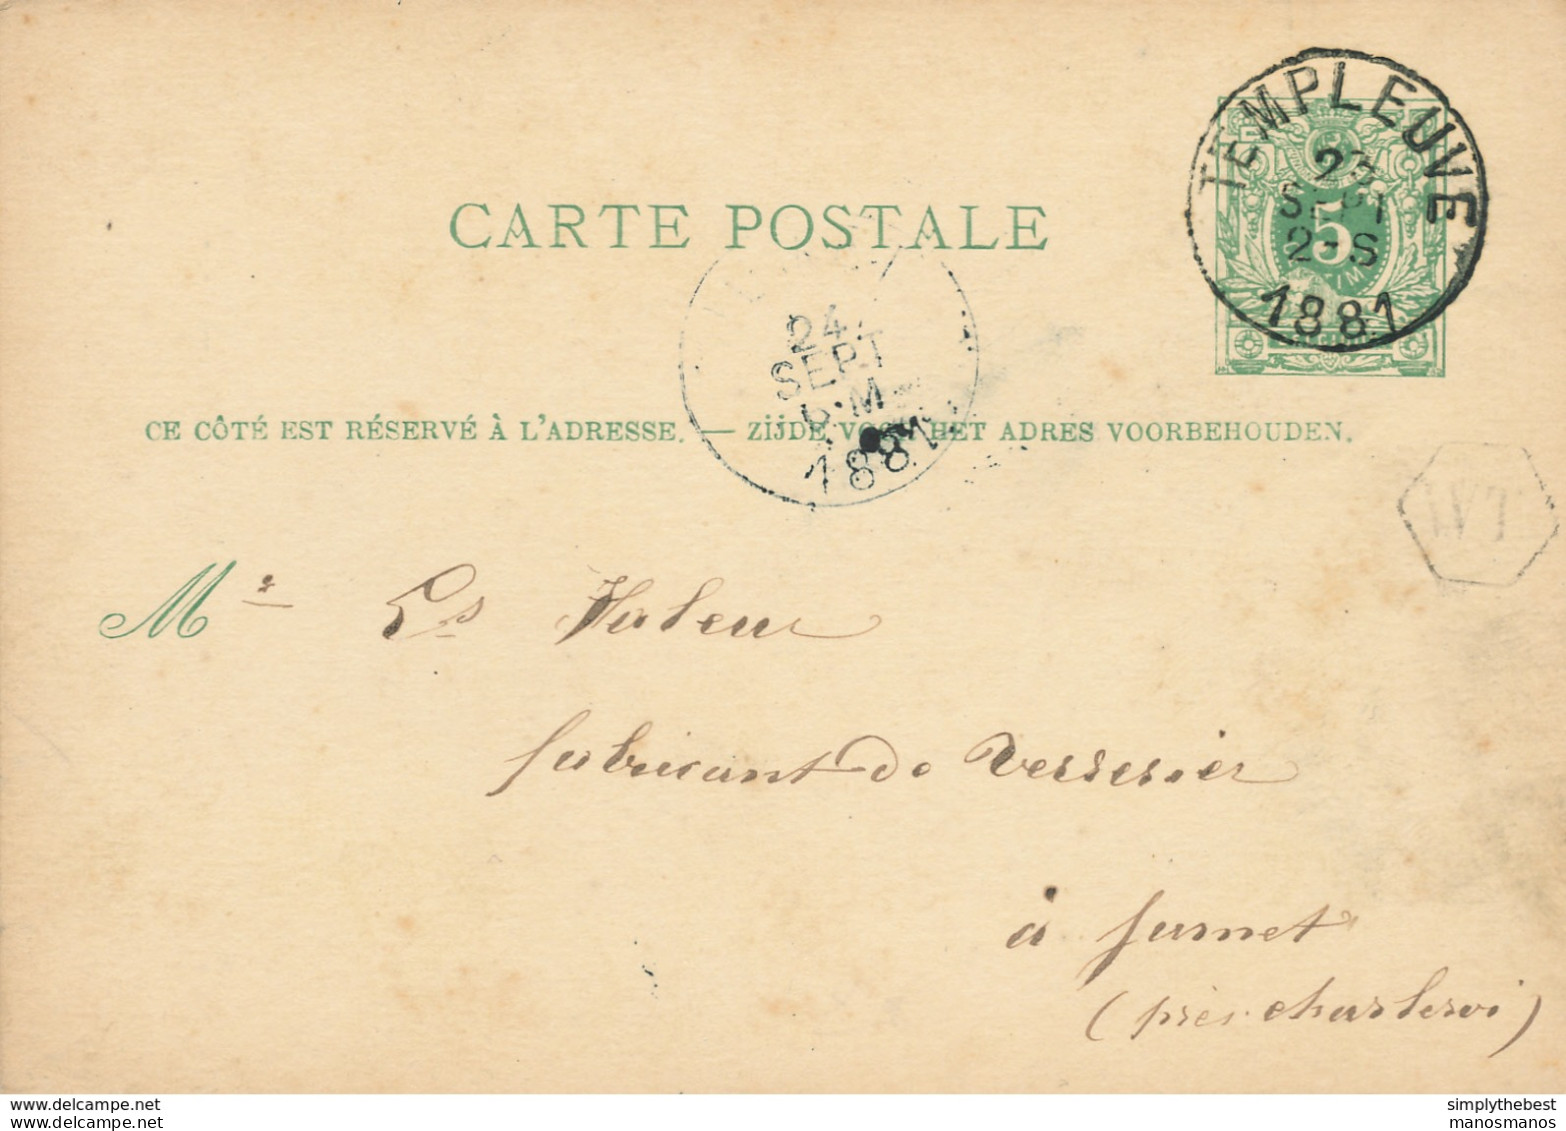 ZZ992 - Entier Postal Lion Couché TEMPLEUVE 1881 Vers JUMET - Boite Rurale Hexagonale WT - Origine TEMPLEUVE - Landpost (Ruralpost)